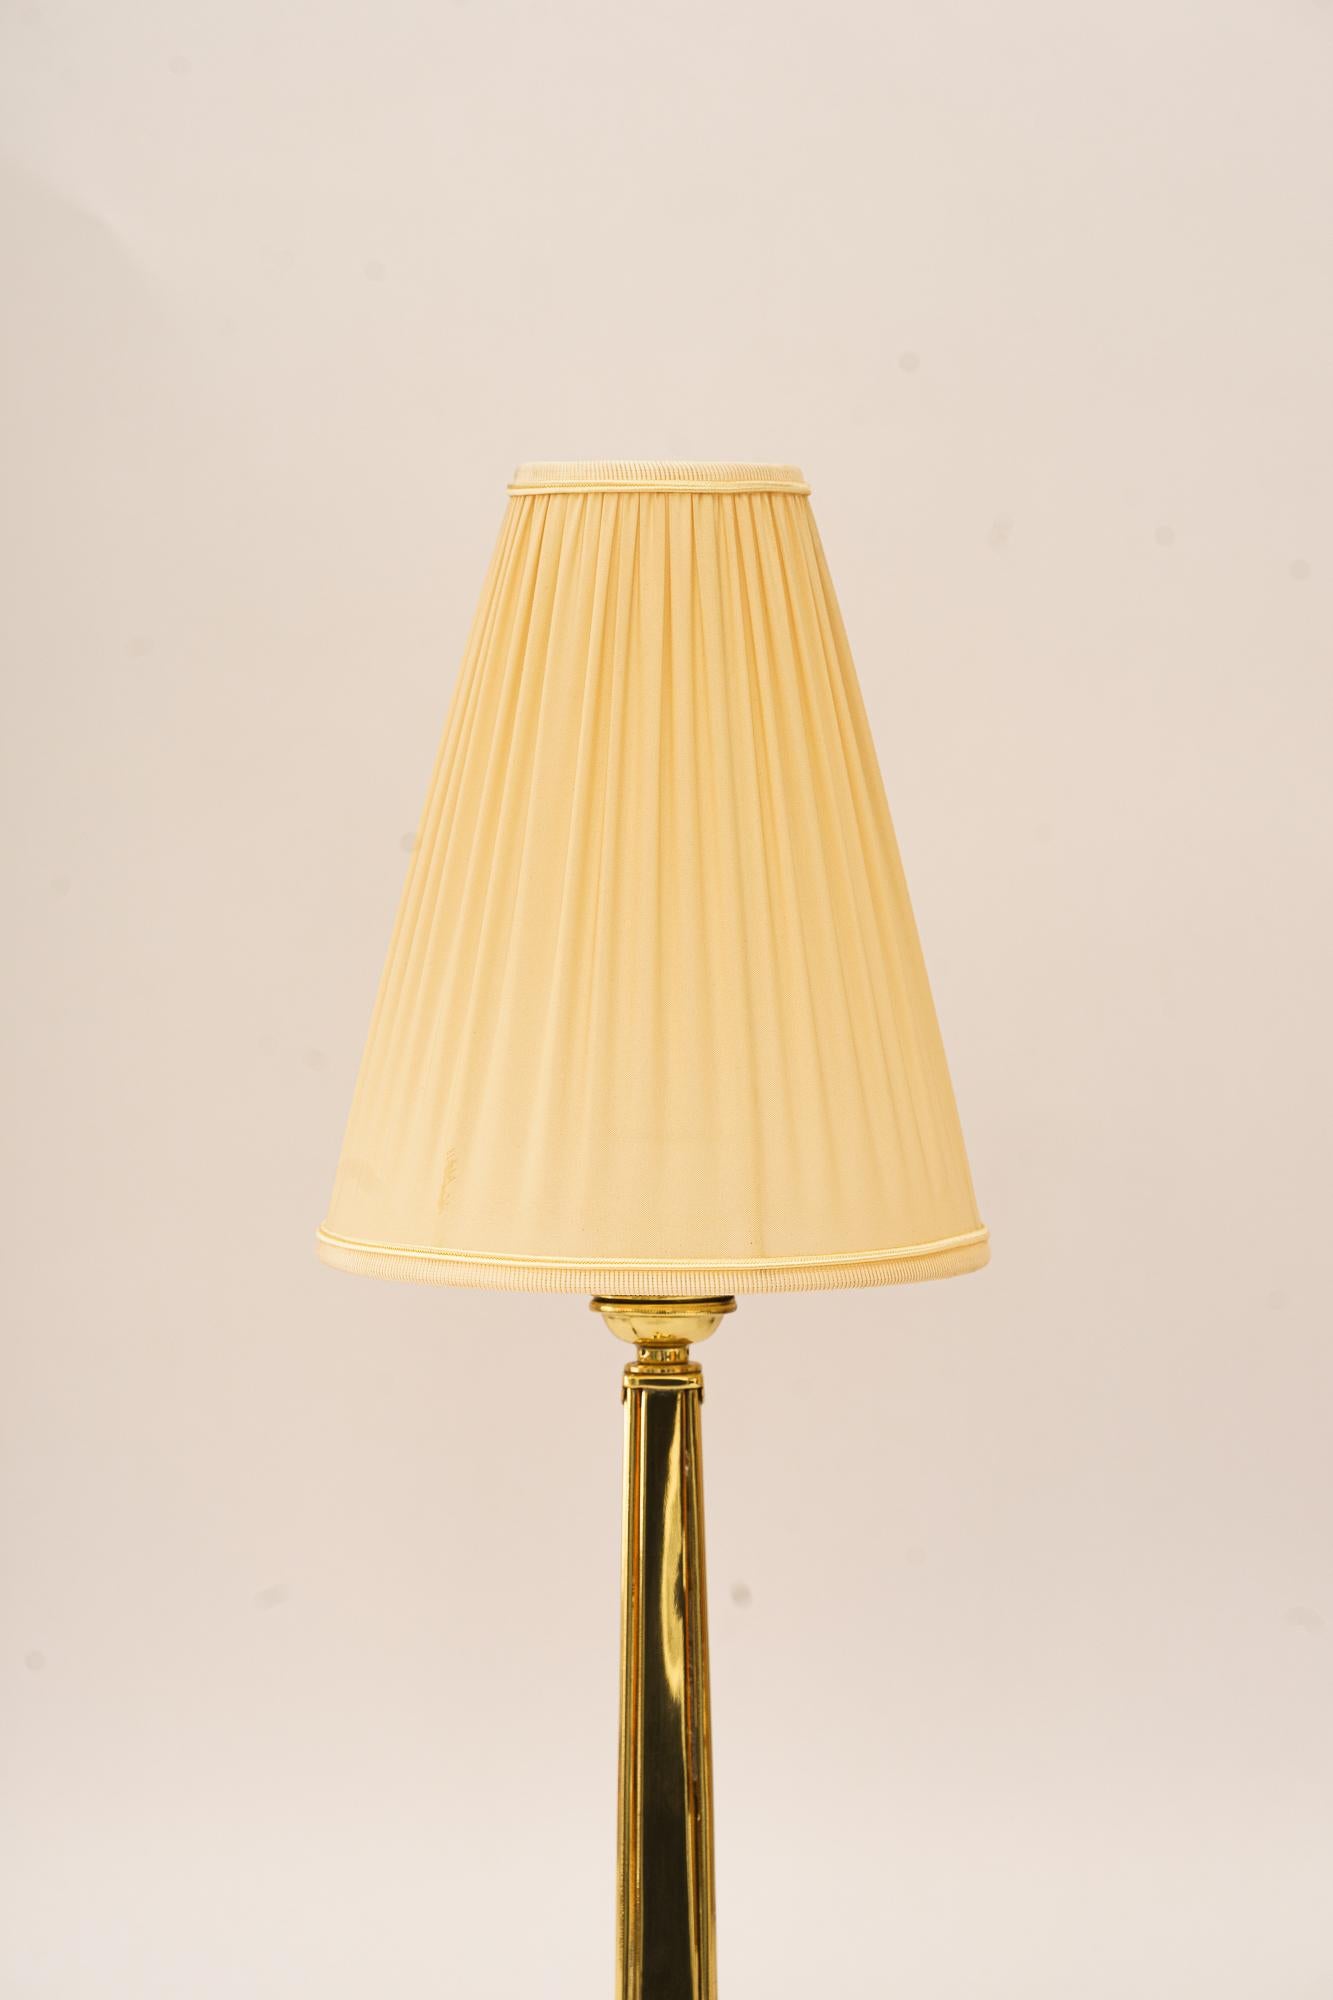 Lampe de table Art Déco avec abat-jour en tissu vienne vers 1920
Laiton poli et émaillé au four
L'abat-jour en tissu est remplacé (neuf).
